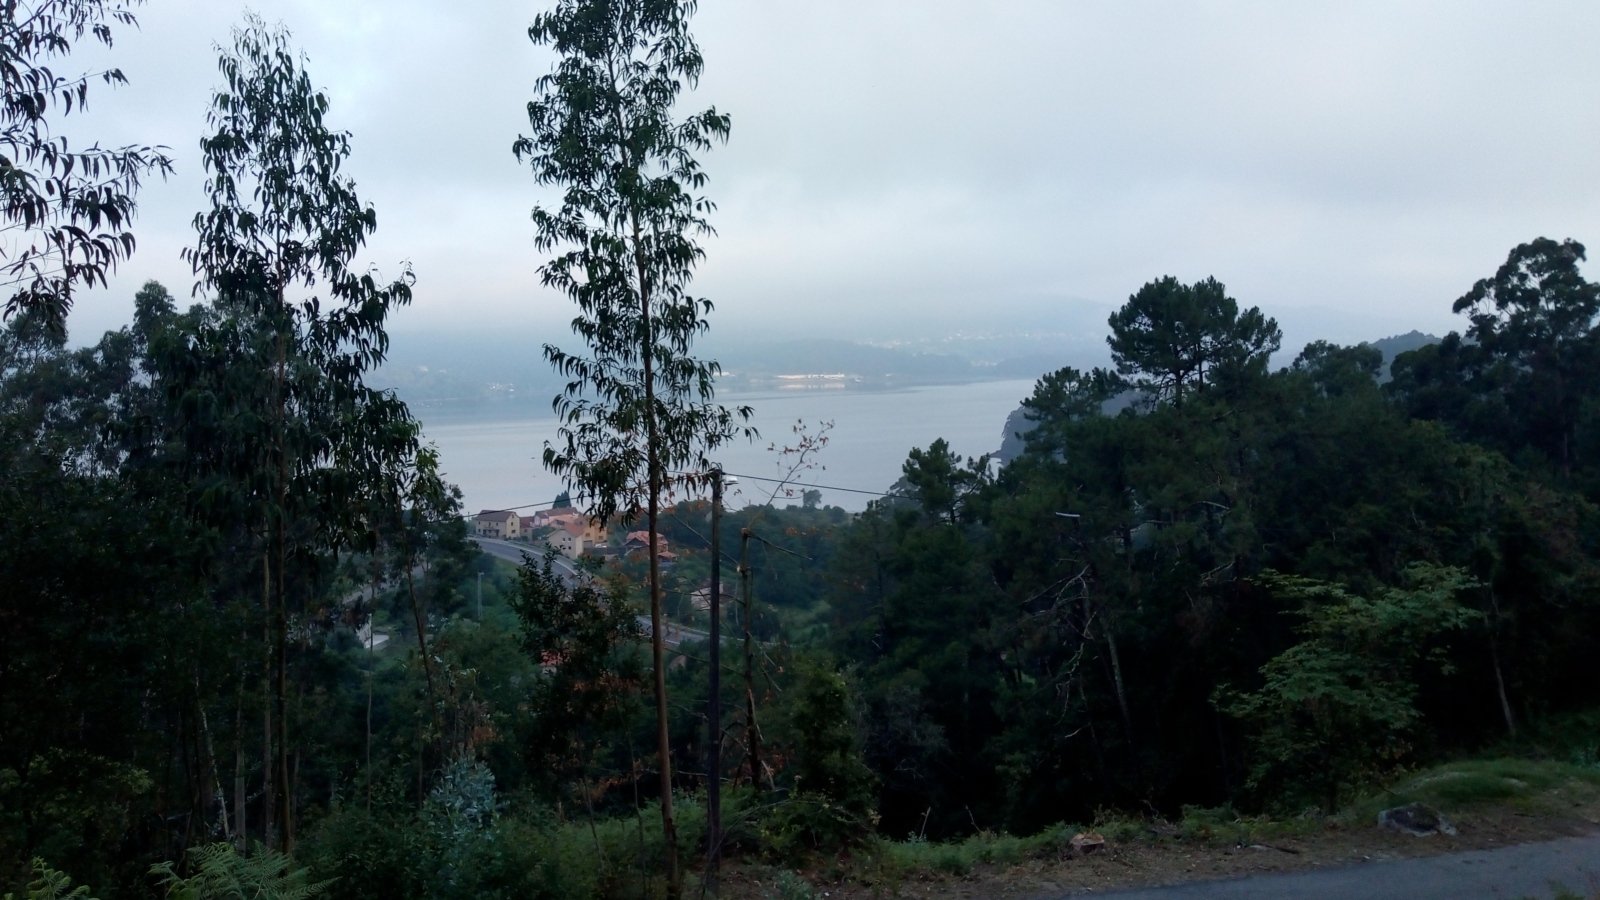 Tag 8 - Blick auf die Bucht Ria de Vigo (c) Die Jakobspilgerin